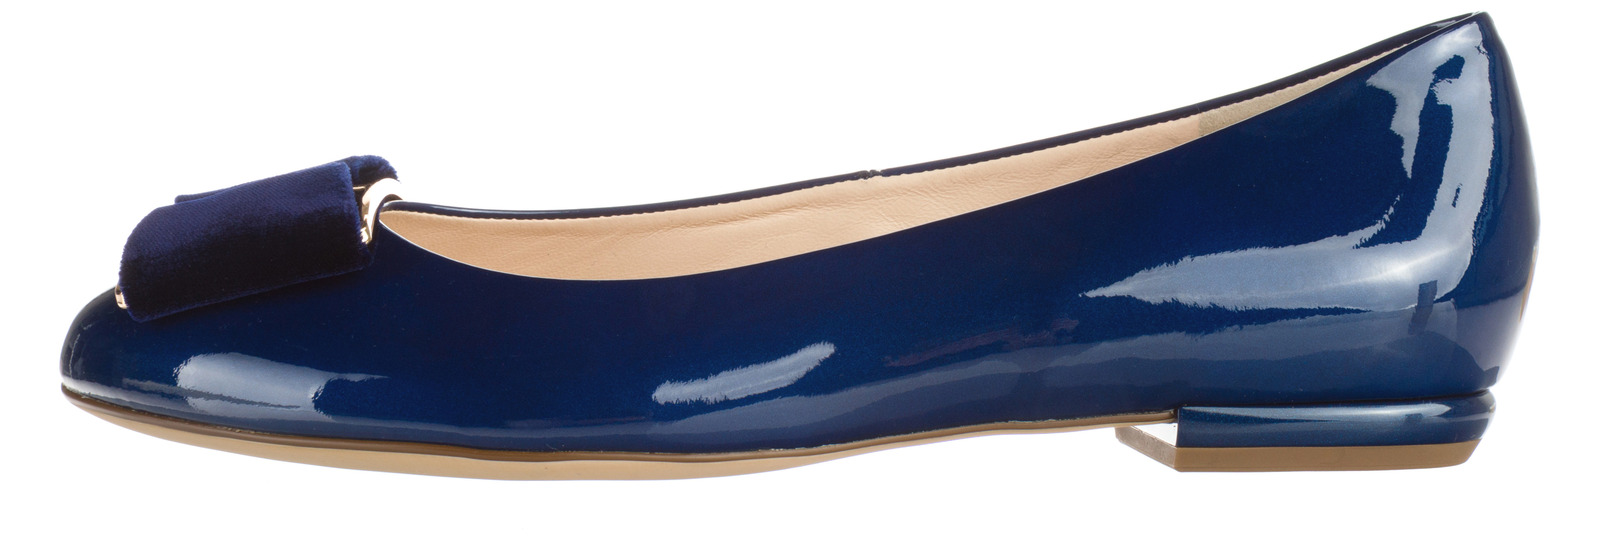 Högl Balerina cipő 38, Kék fotója